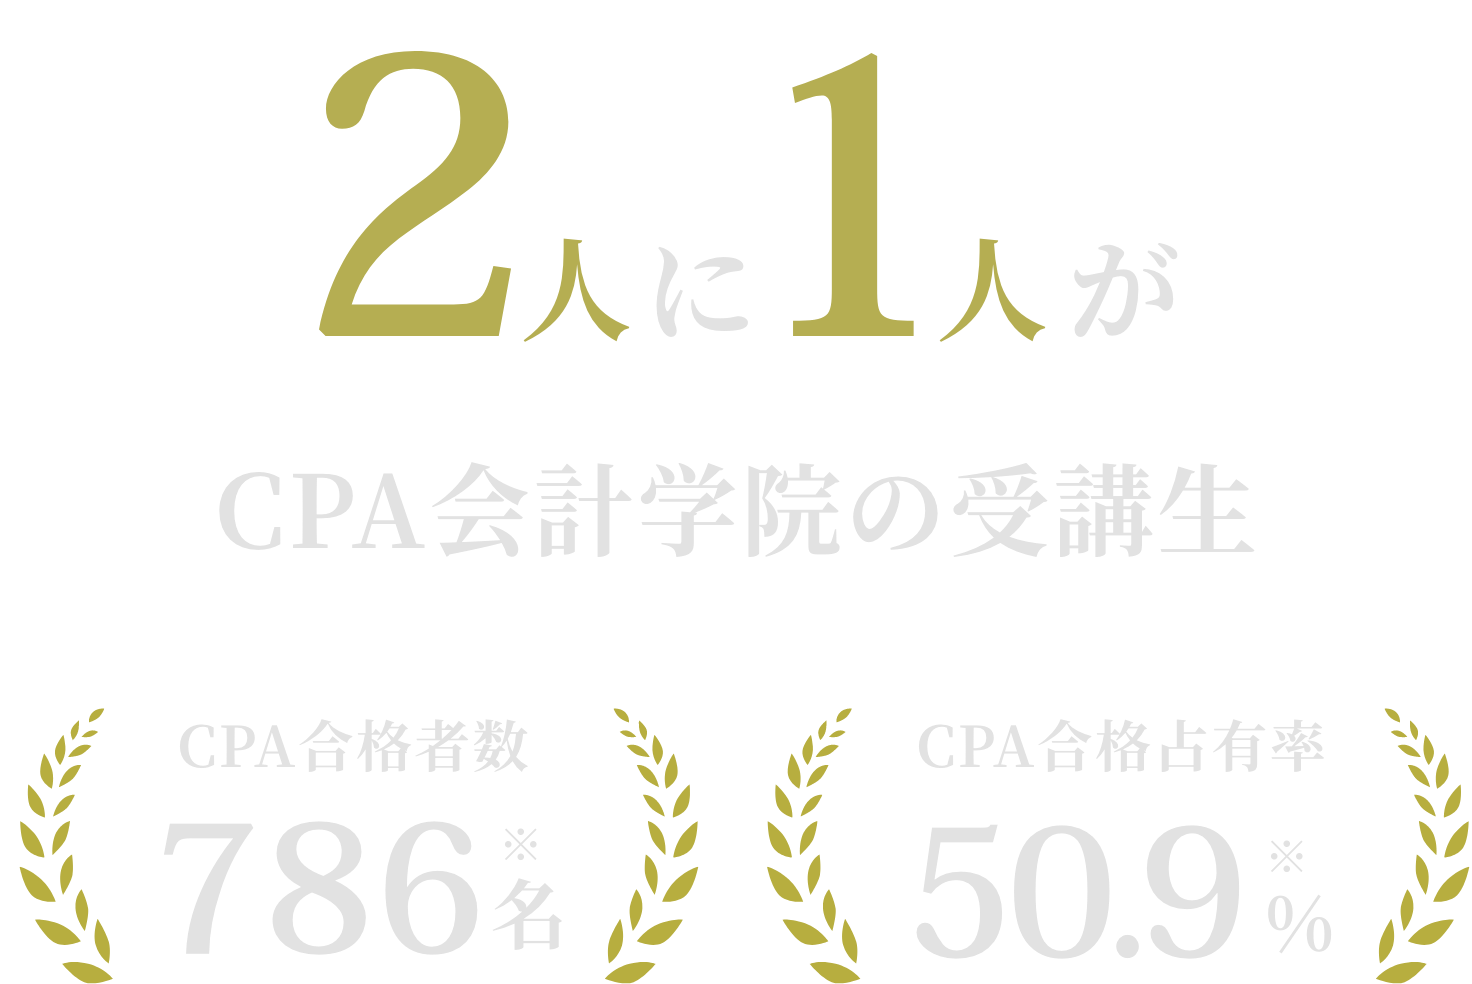 約2人に1人がCPA会計学院の受講生。CPA合格者数は786名。CPA占有率は50.9%